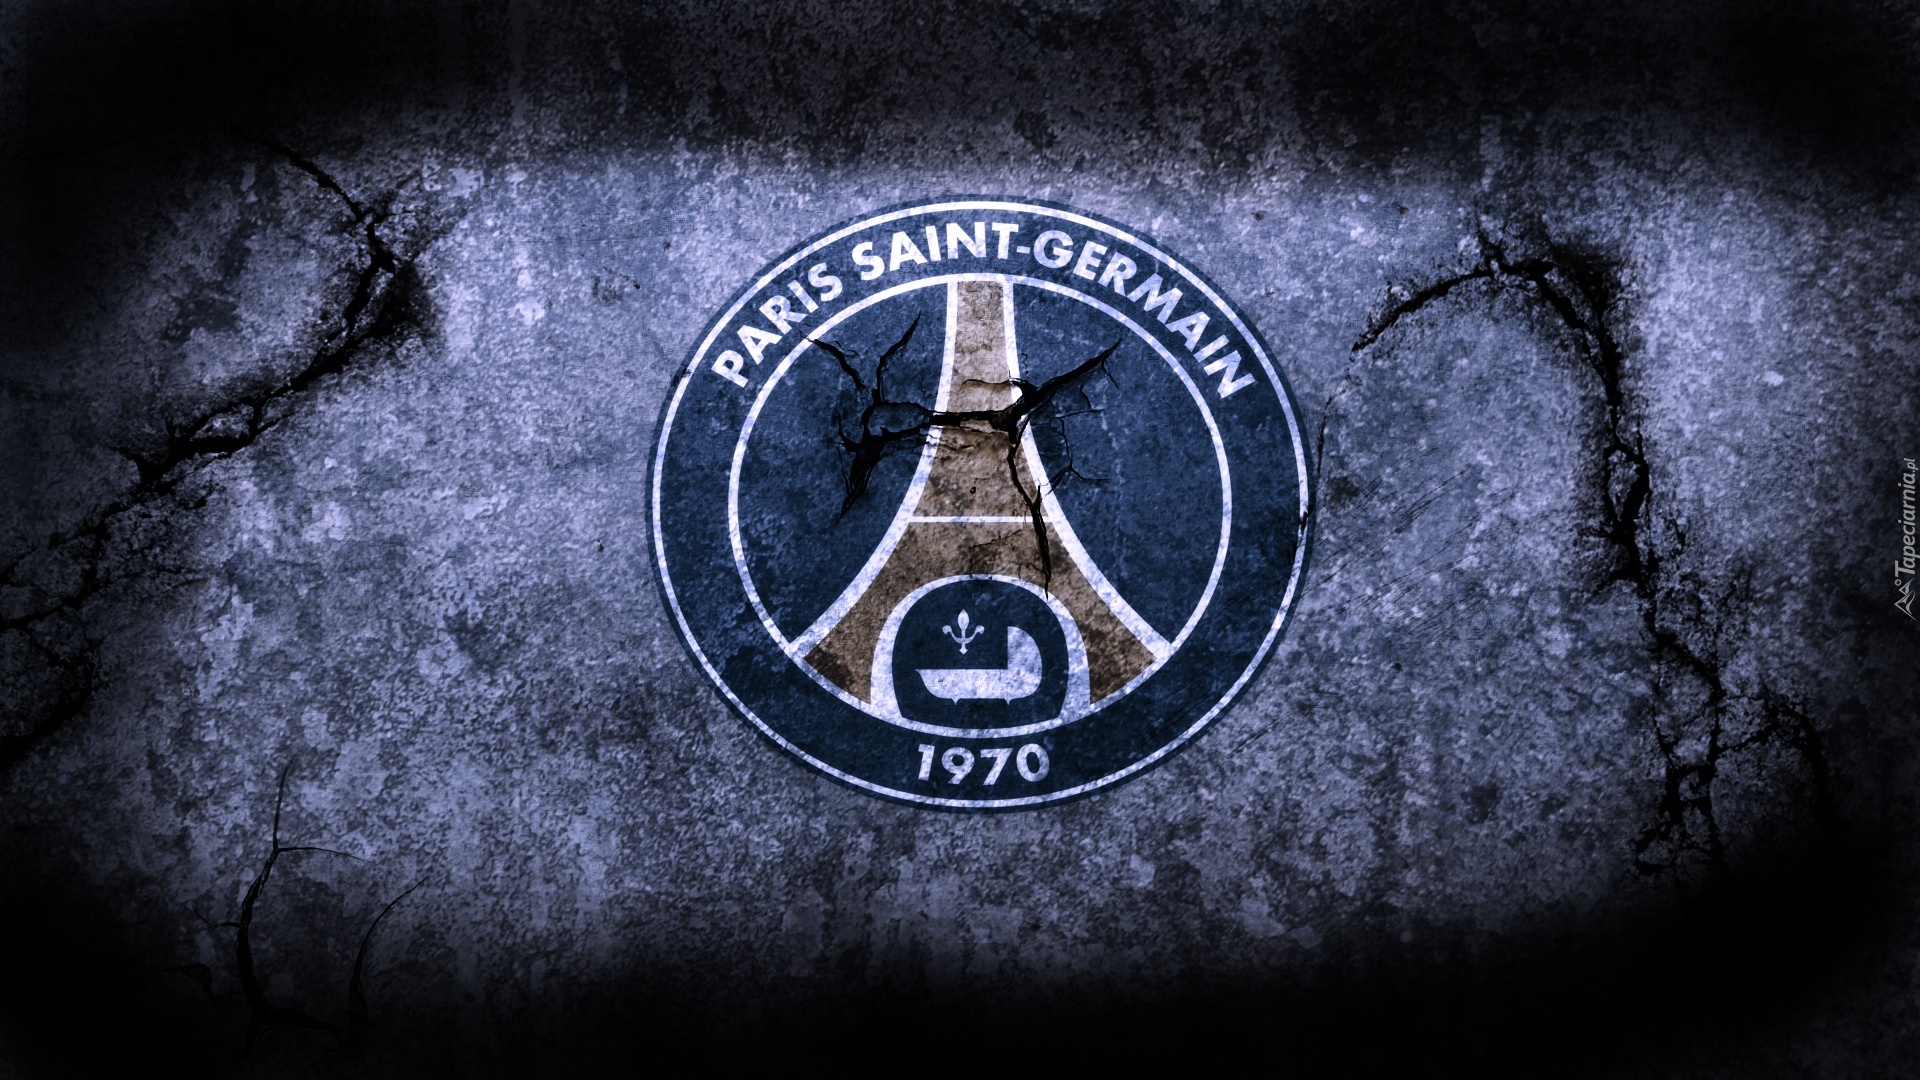 Klub, Piłkarski, Paris Saint-Germain